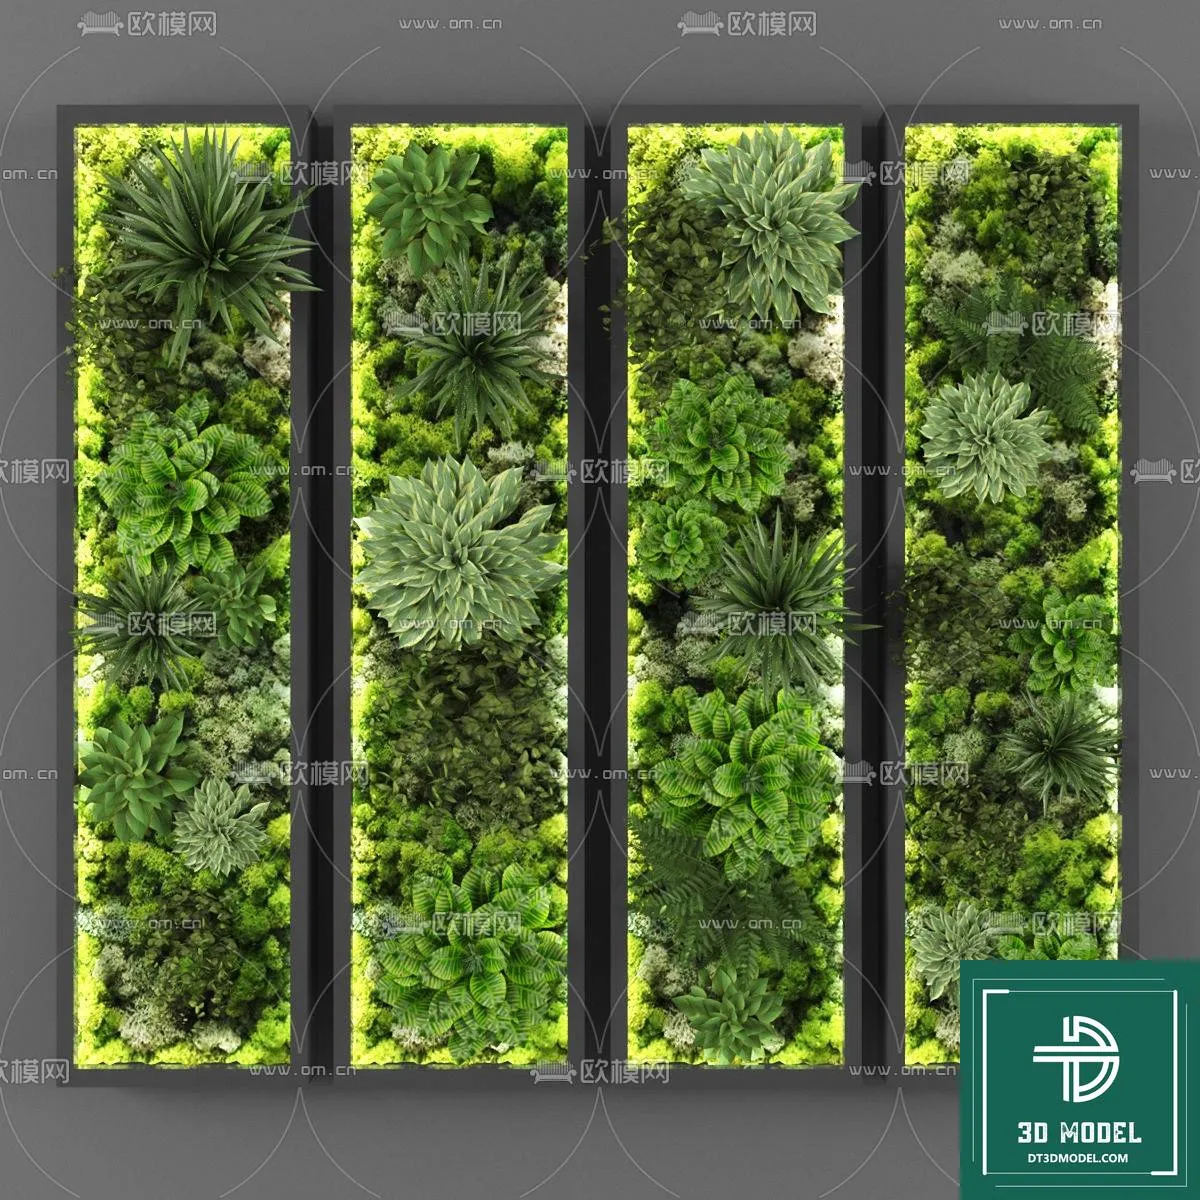 VERTICAL GARDEN – FITOWALL PLANT 3D MODEL – 013